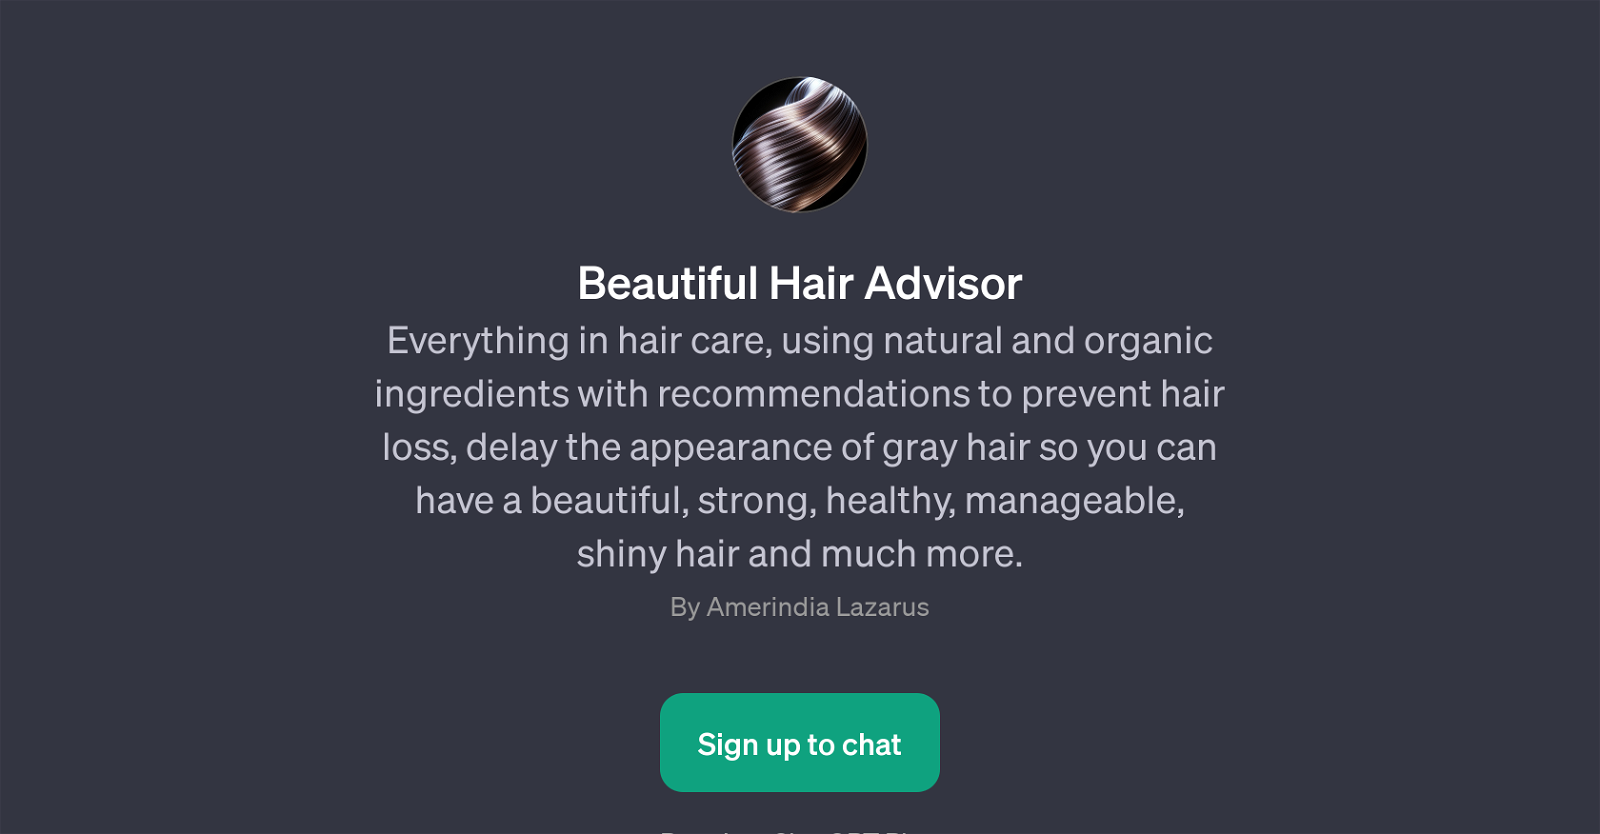 Beautiful Hair Advisor website